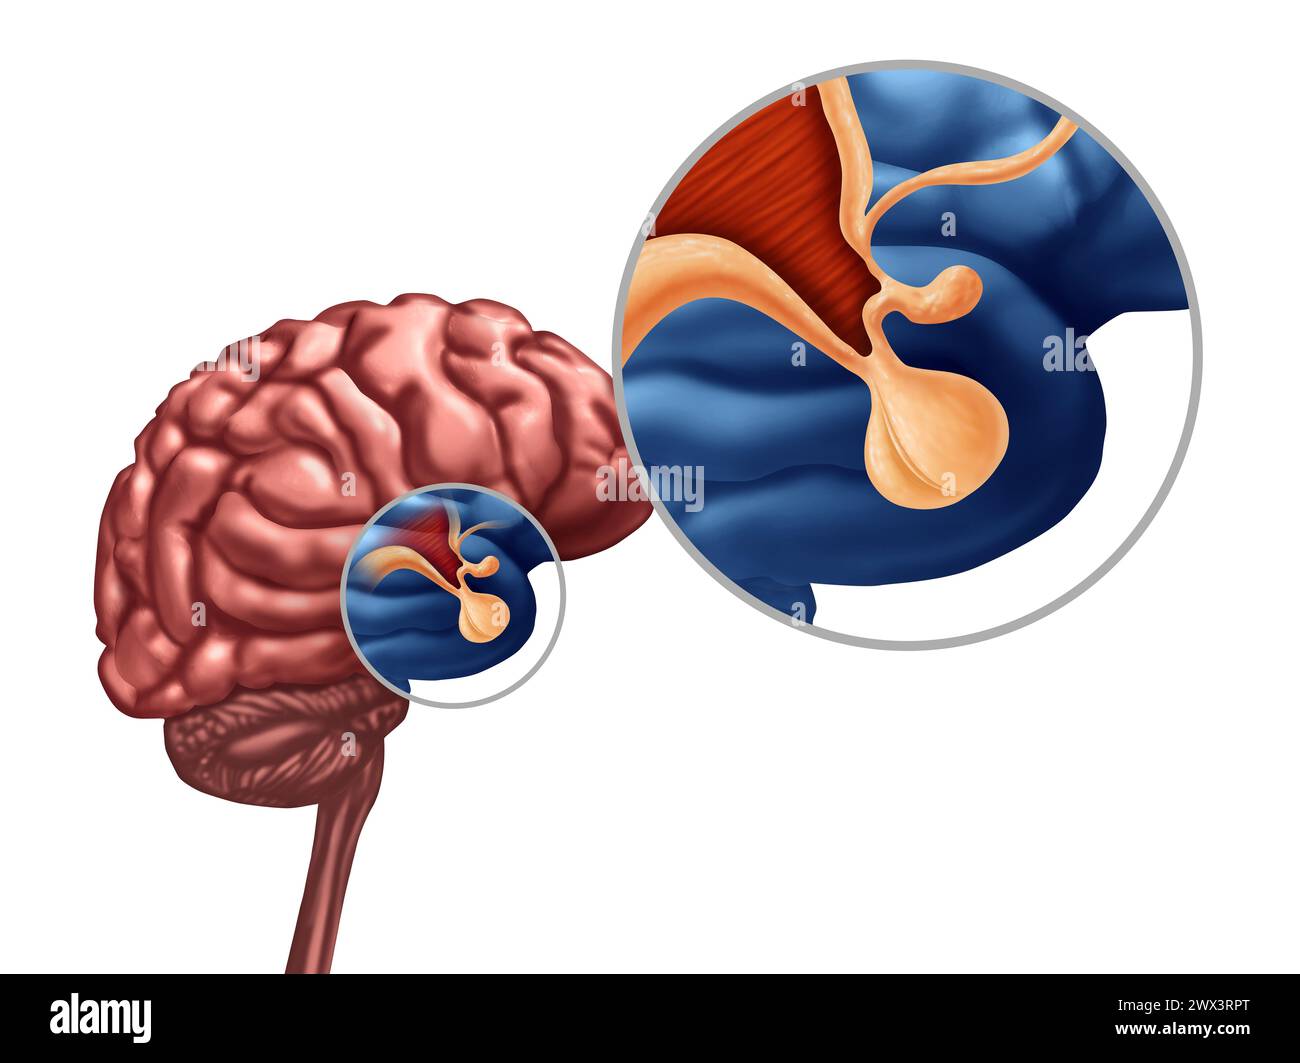 Ghiandola ipofisaria o ipotalamo o ipofisi cerebri concetto come simbolo del sistema endocrino correlato all'ormone della crescita come parte dell'anatomia umana. Foto Stock